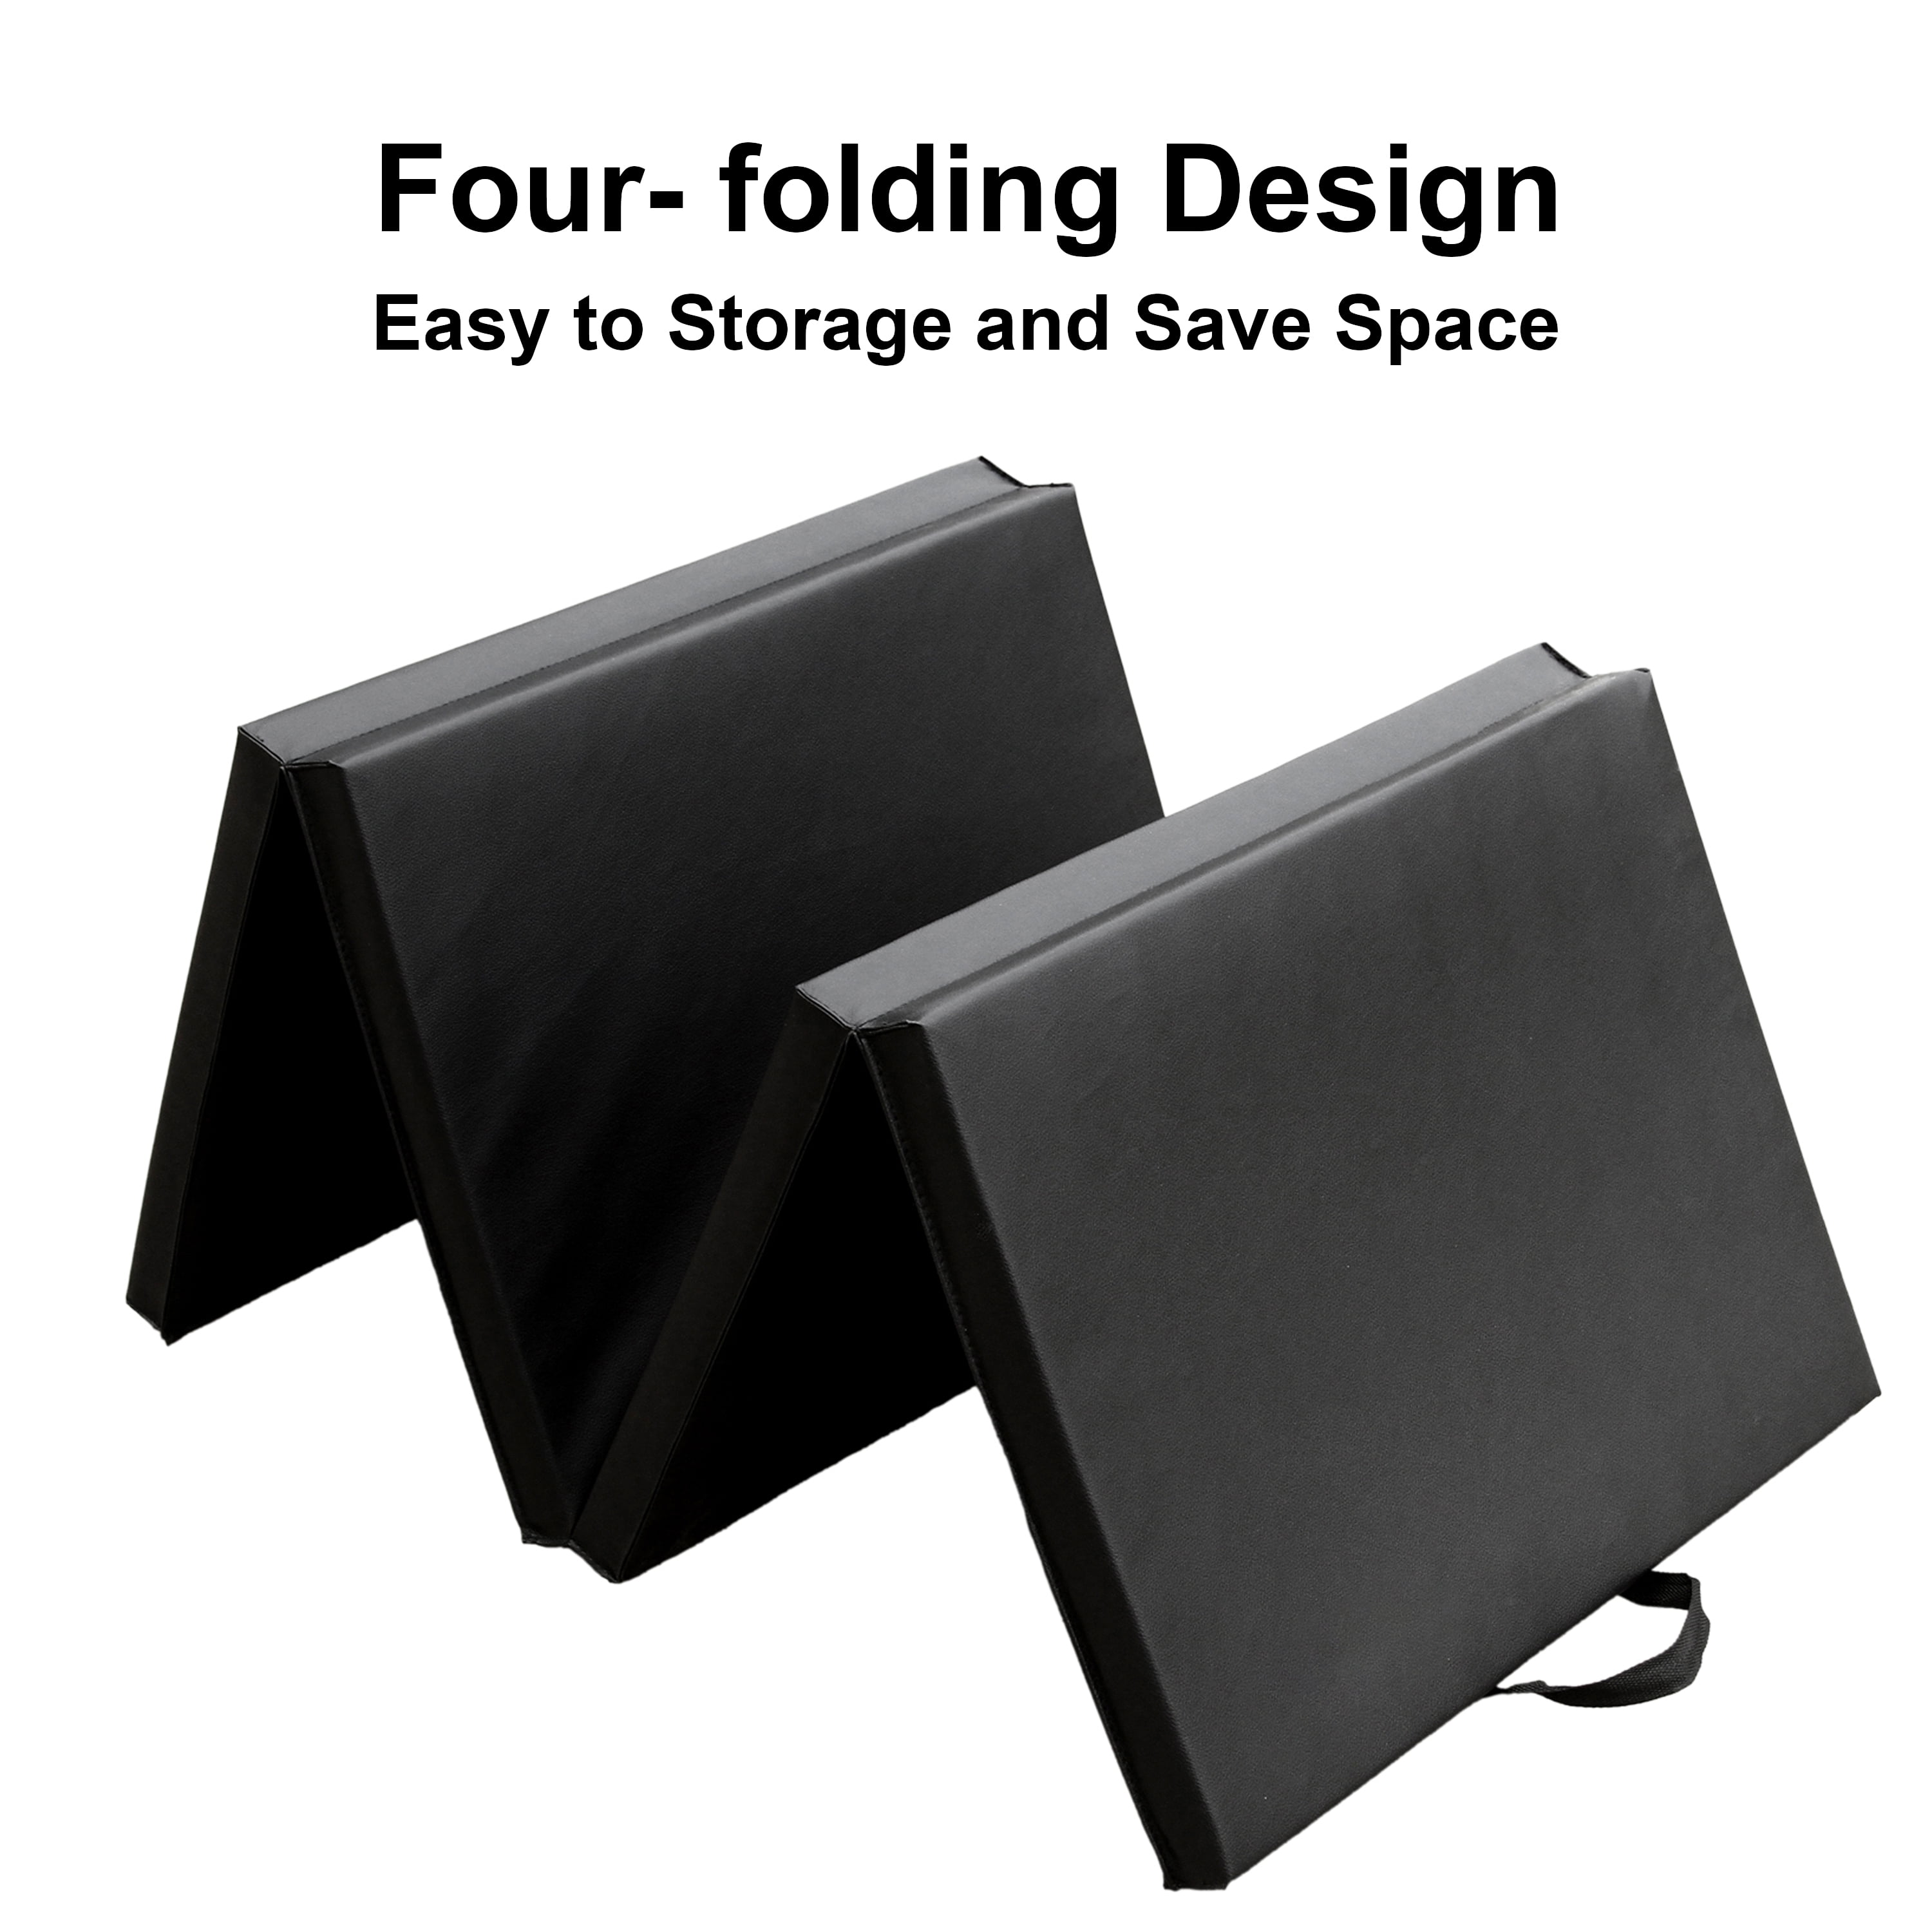 Bi-Fold Folding Exercise Mat - Black